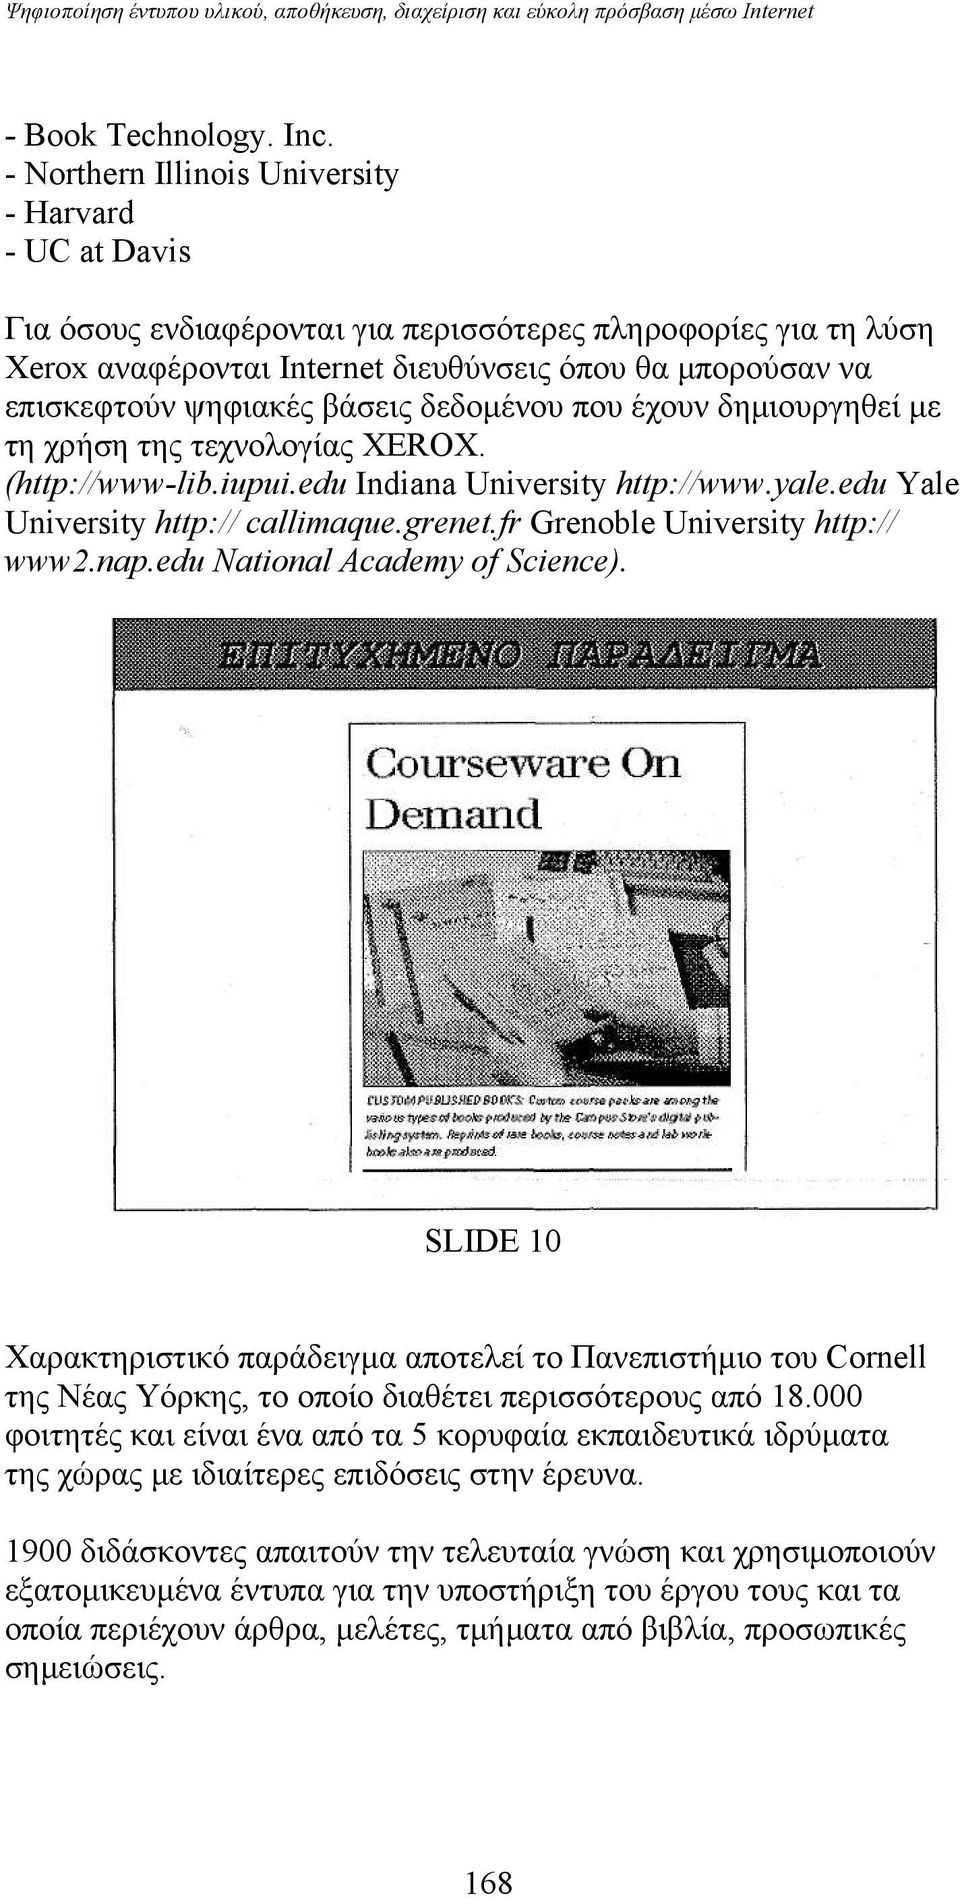 ψηφιακές βάσεις δεδομένου που έχουν δημιουργηθεί με τη χρήση της τεχνολογίας XEROX. (http://www-lib.iupui.edu Indiana University http://www.yale.edu Yale University http:// callimaque.grenet.